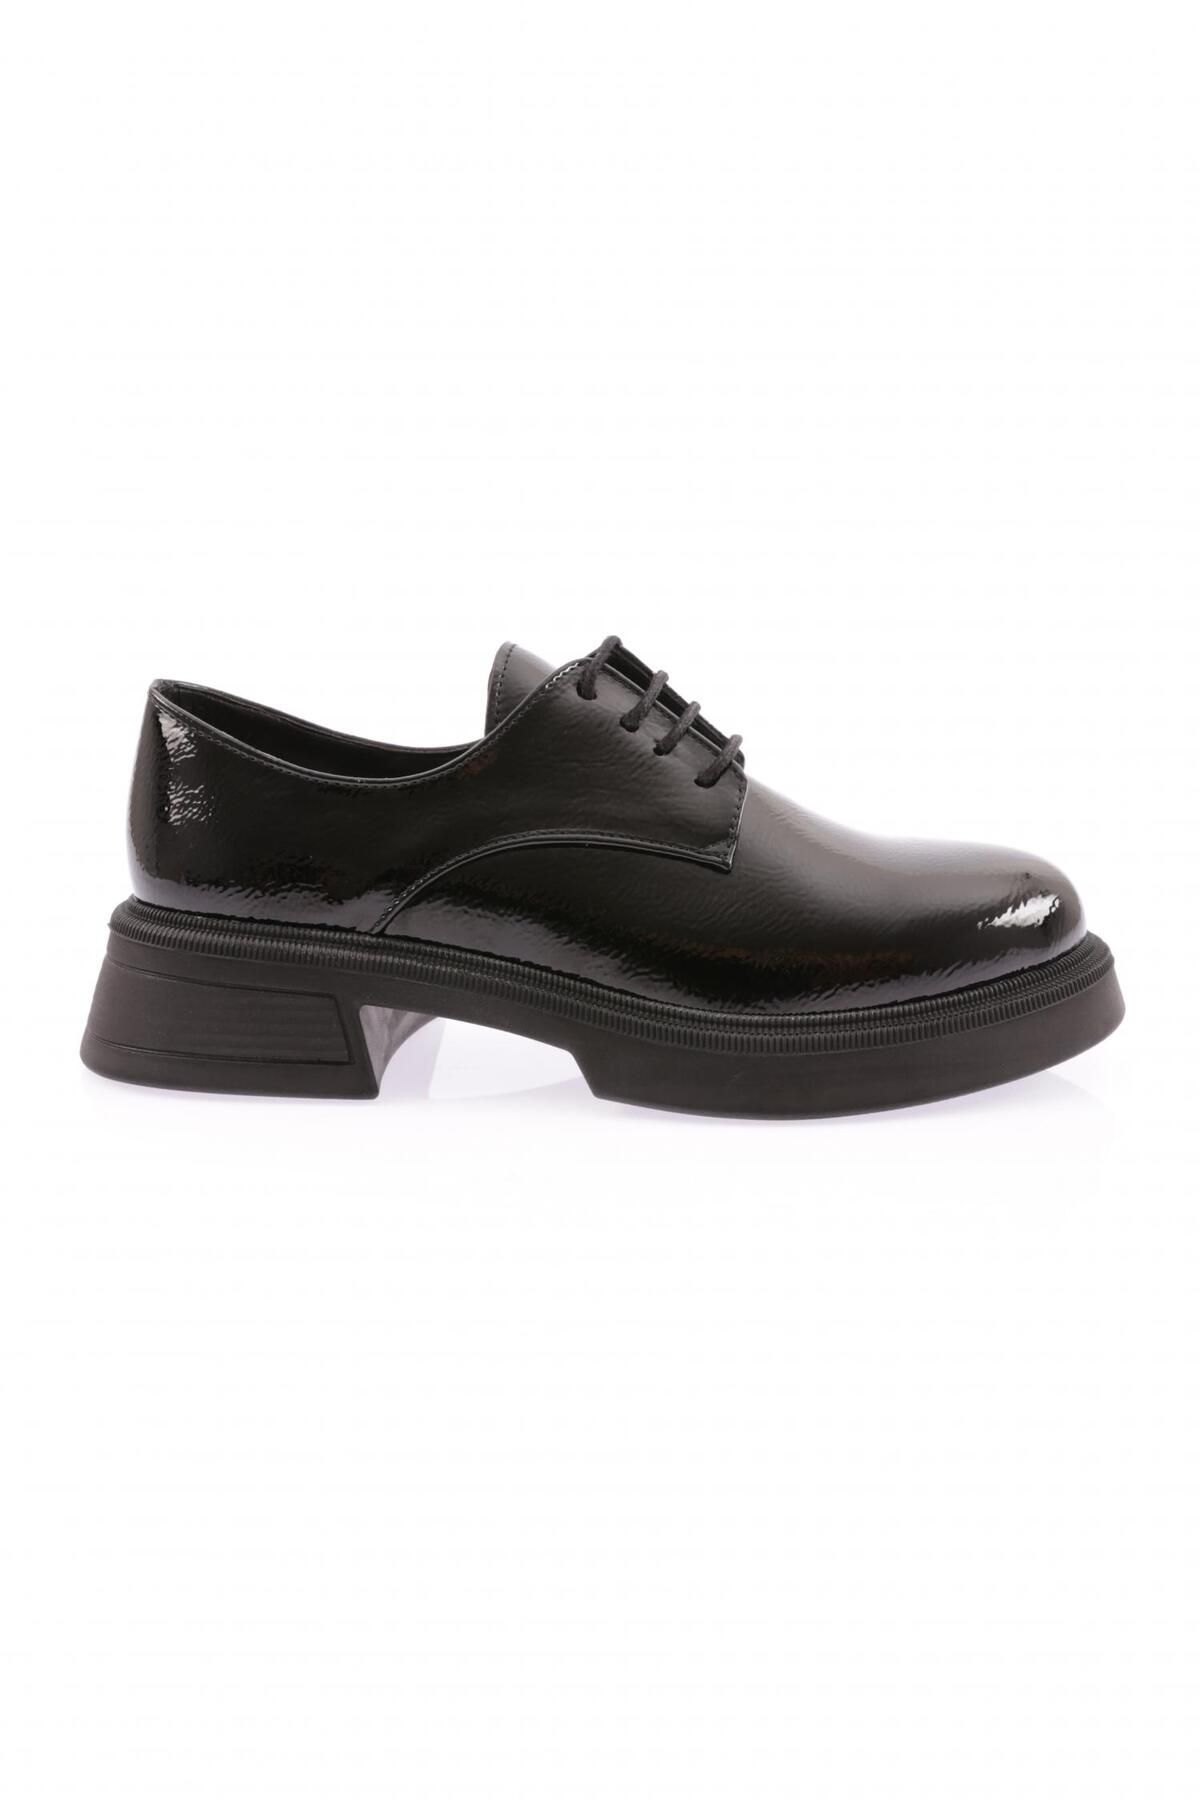 Dgn 1003-22k Kadın Bağcıklı Oxford Ayakkabı Siyah Kırışık